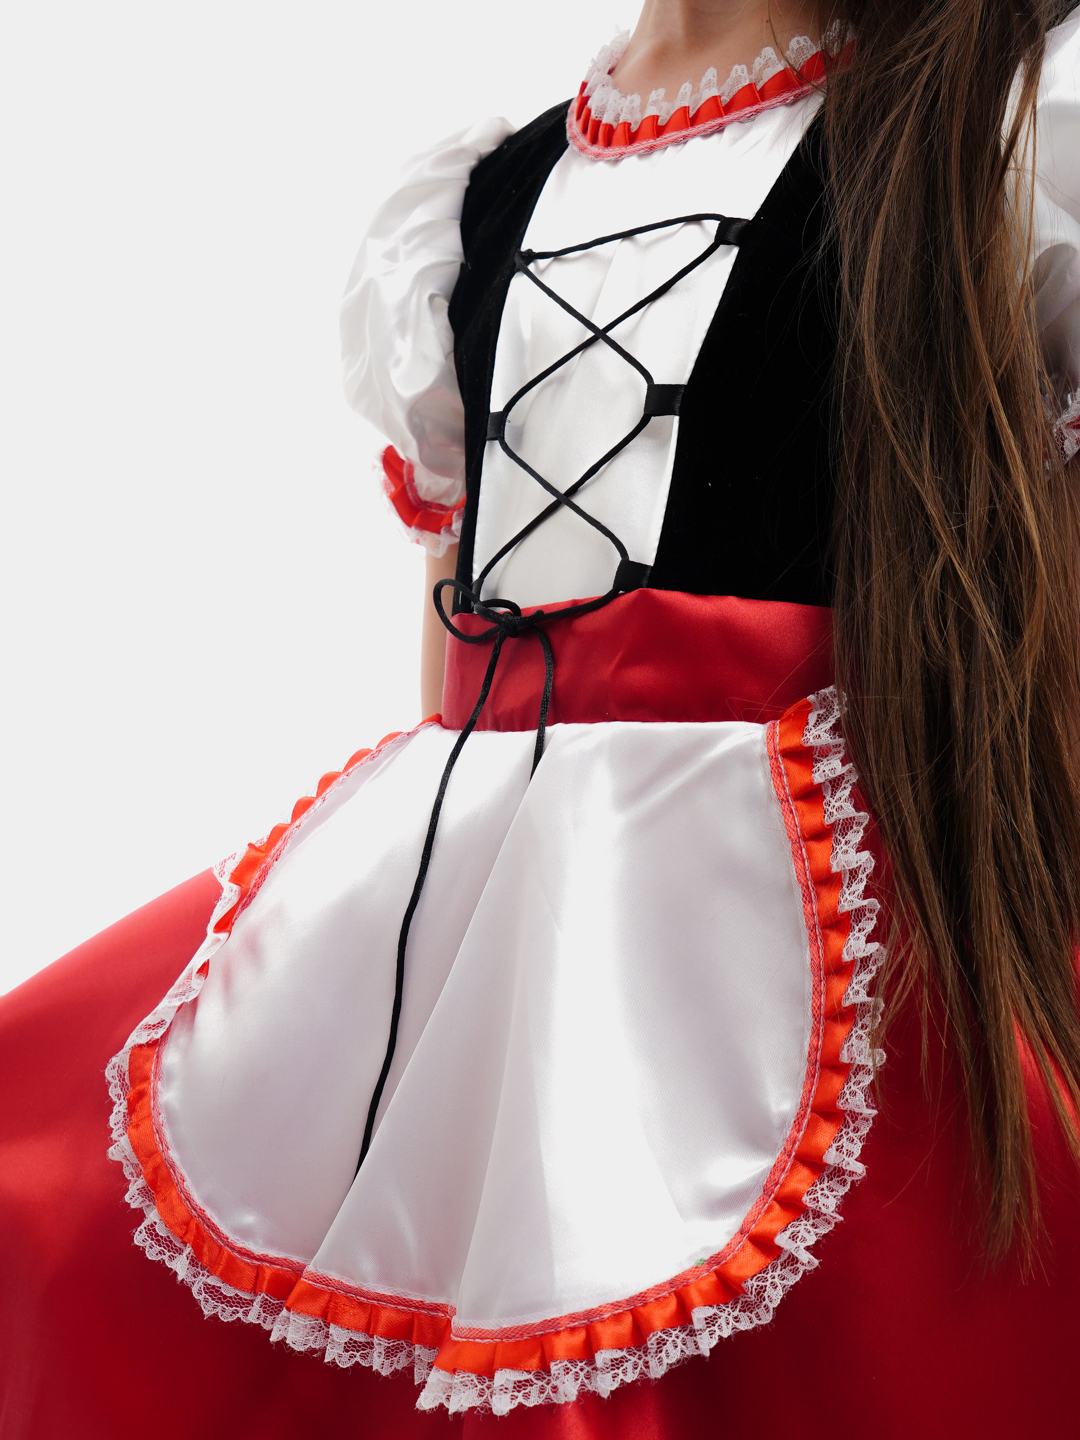 Детский карнавальный костюм Красная Шапочка своими руками